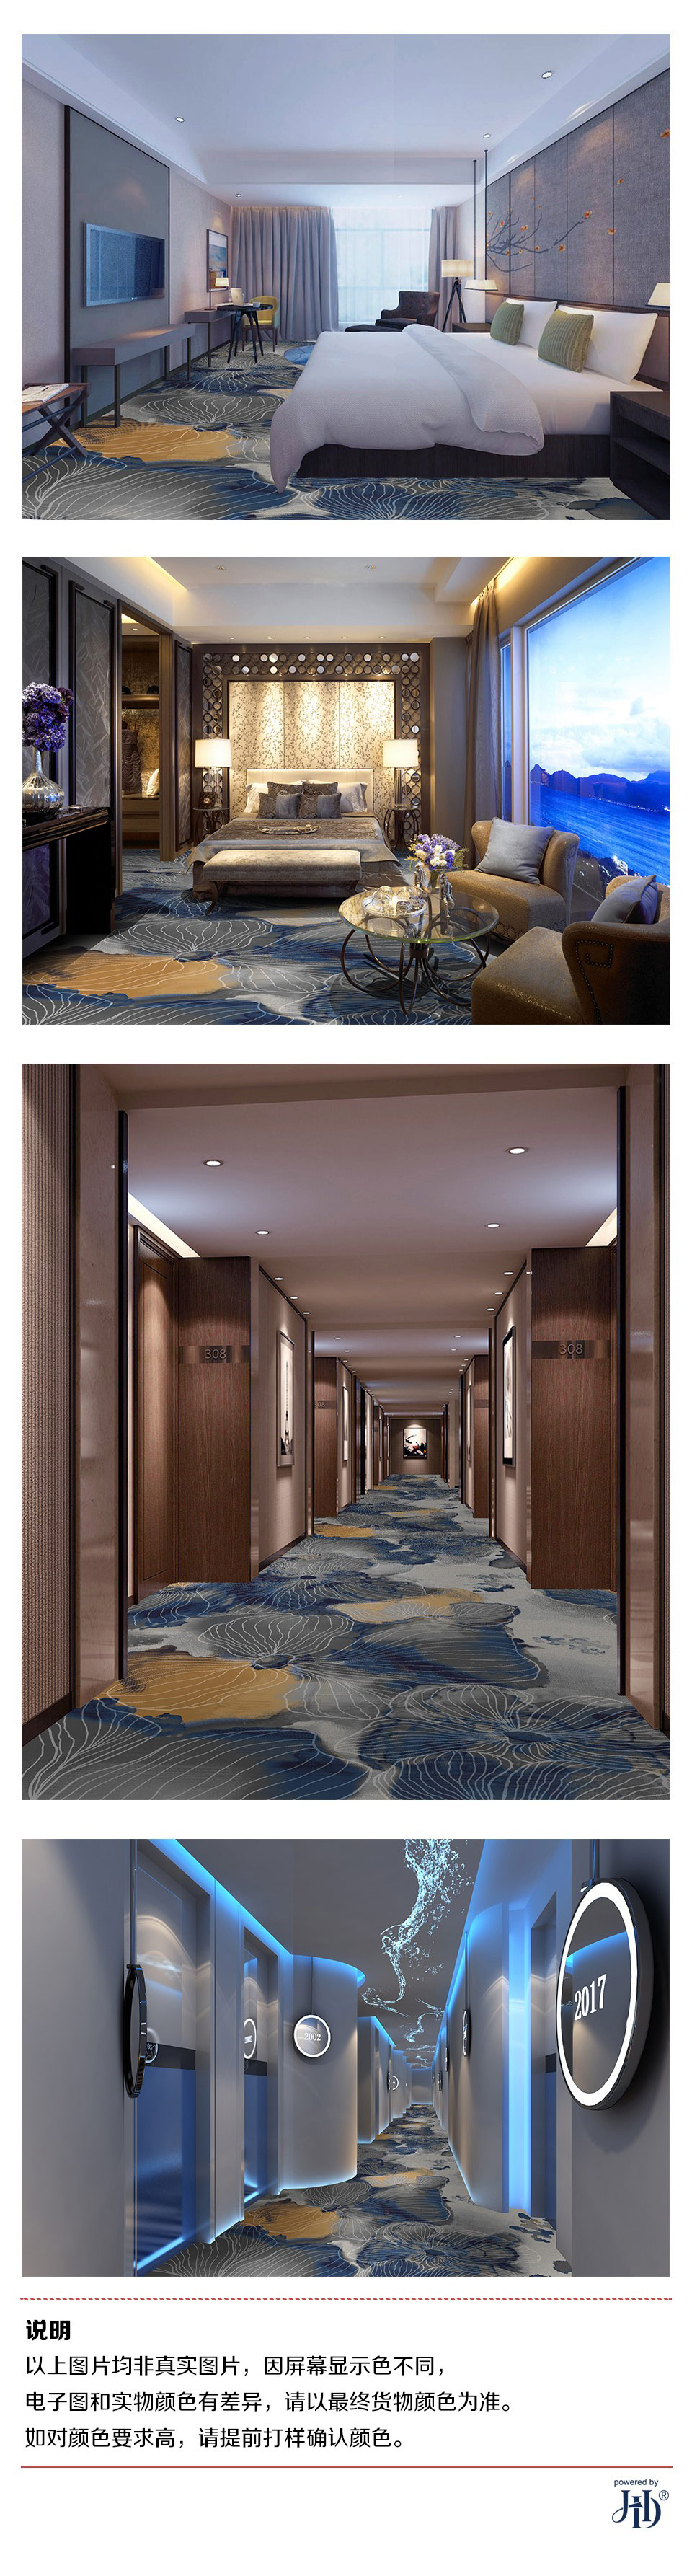 酒店大堂地毯